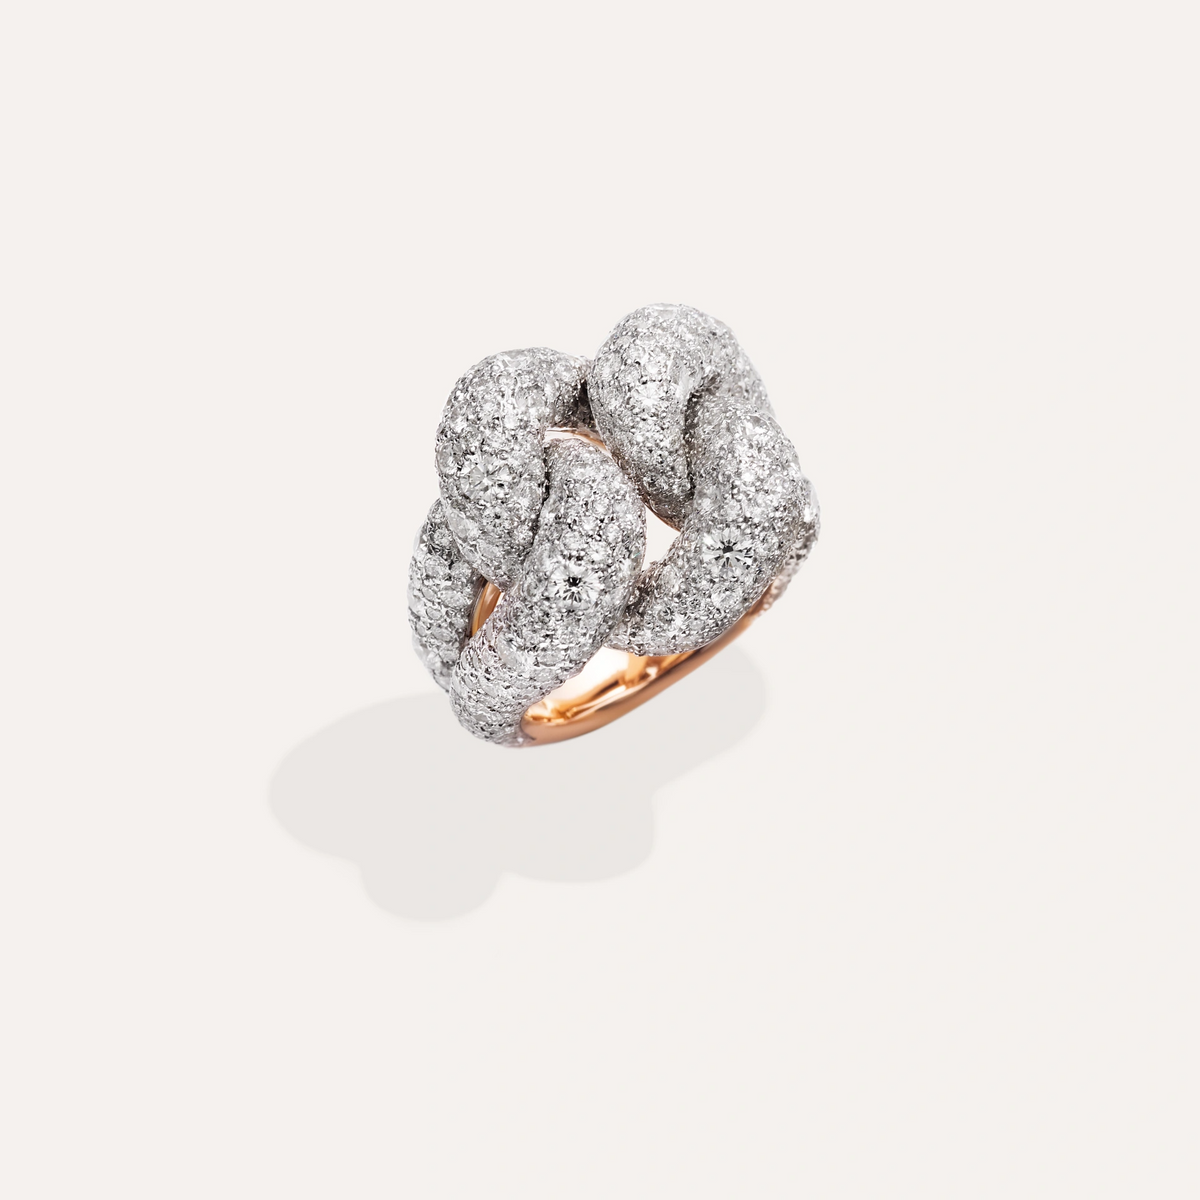 Pomellato Catene Ring in 18k Gold and Silver with White Diamonds - Orsini Jewellers